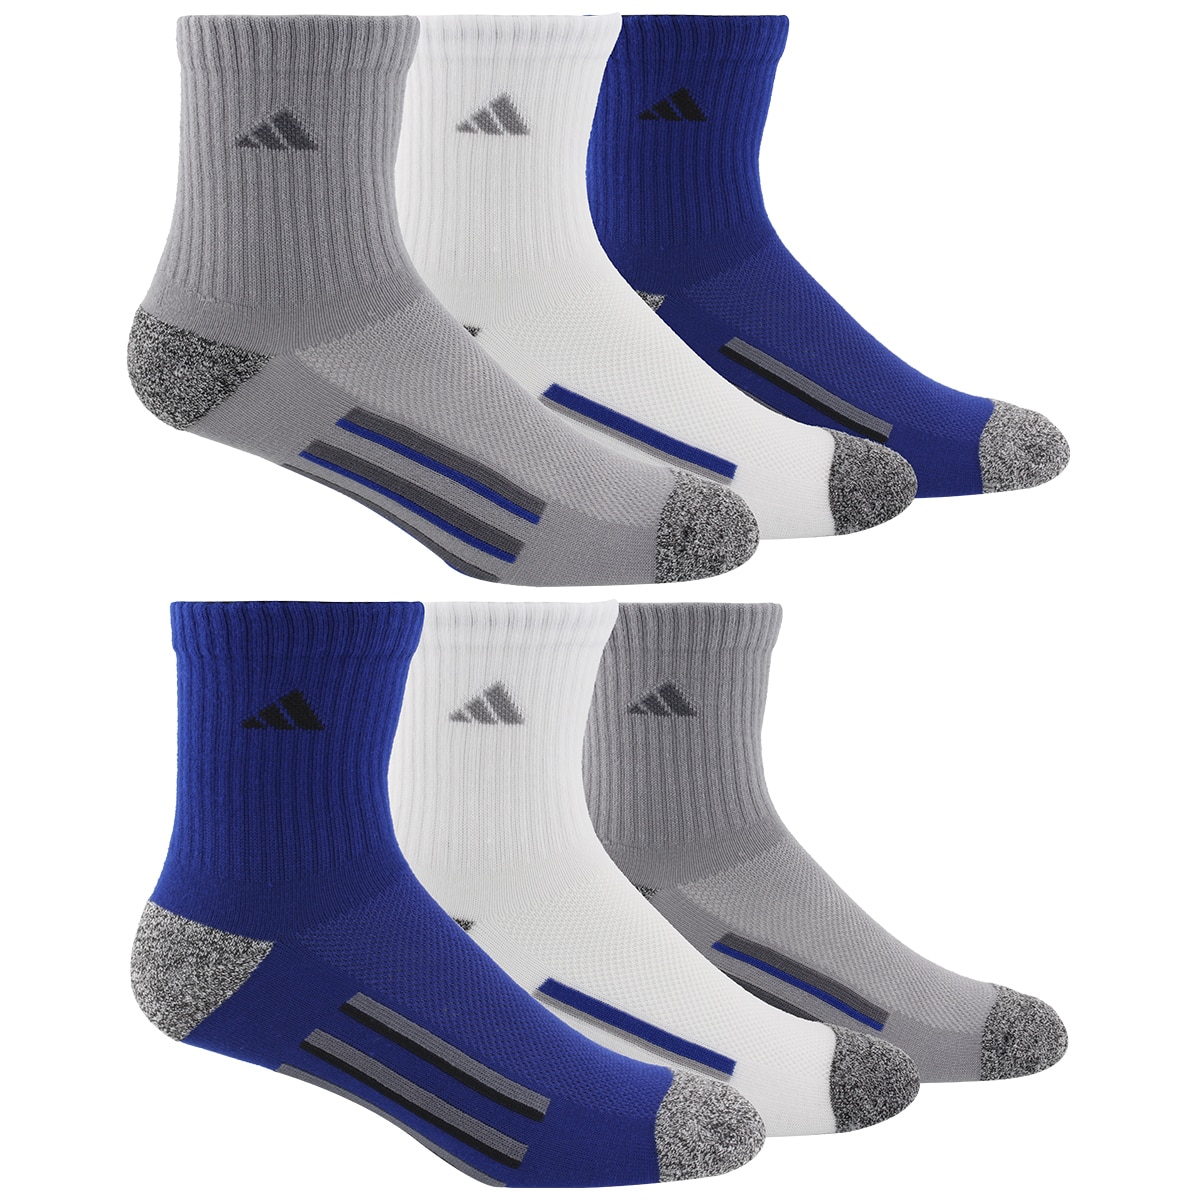 Adidas youth socks - Grey/White/Navy